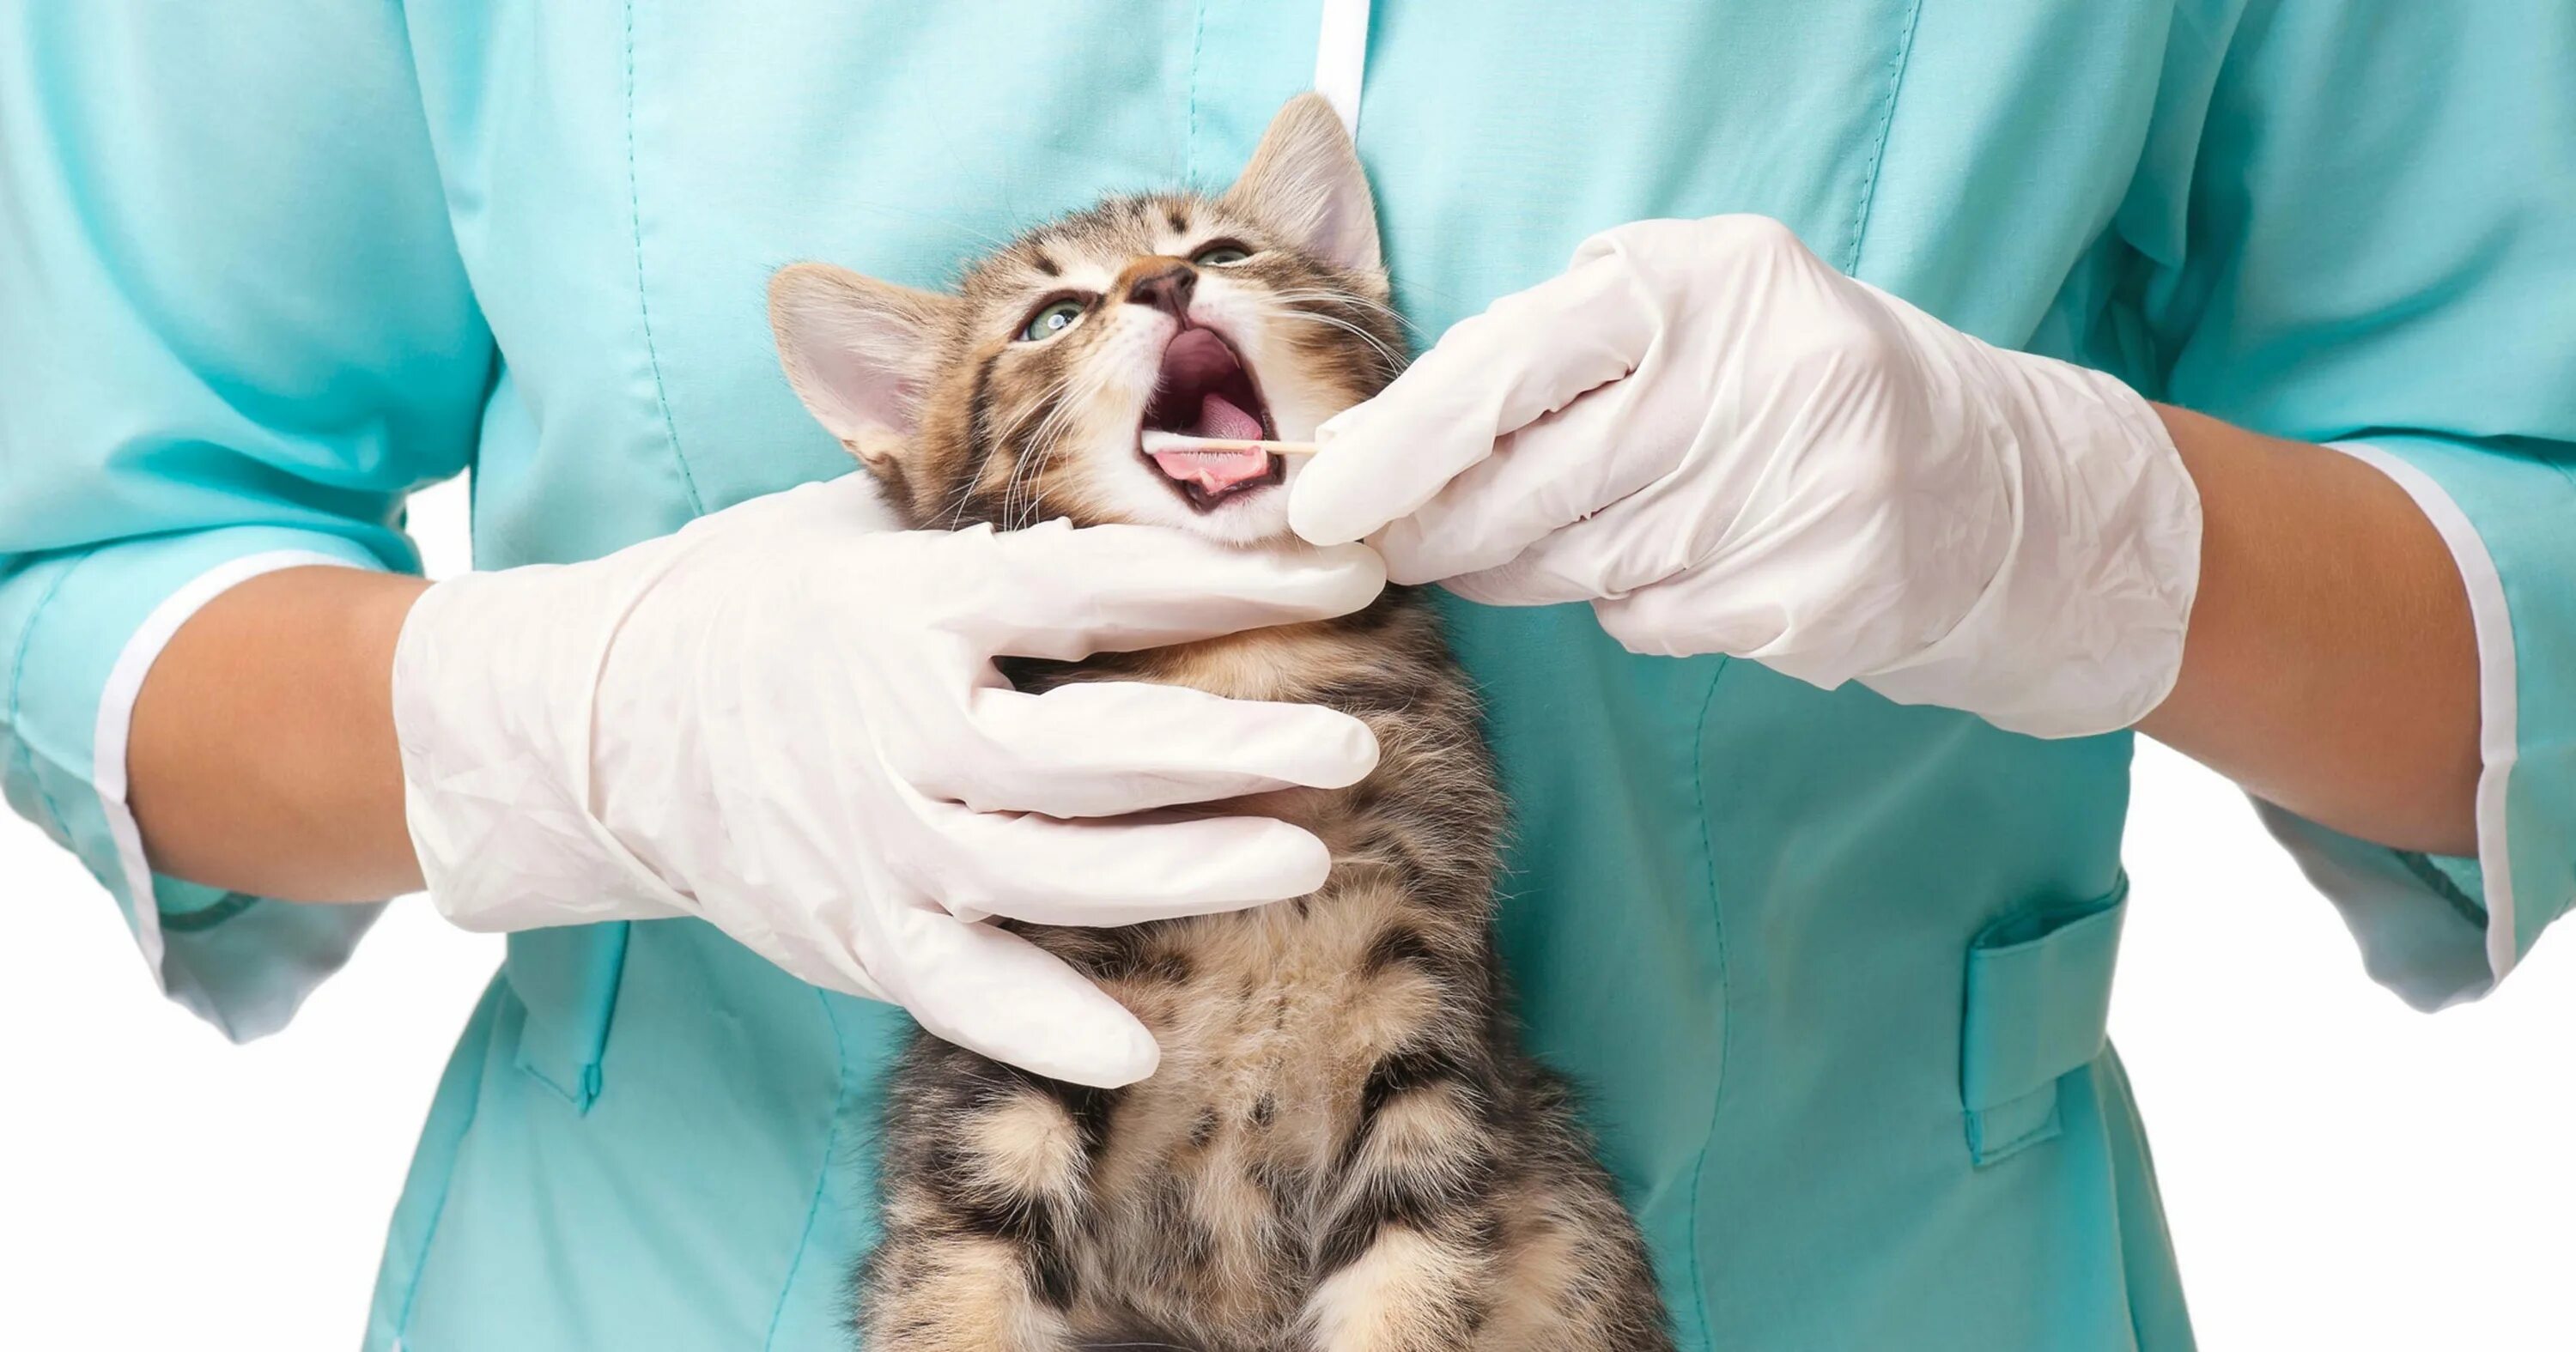 Ветеринар для кошки отзывы. Кальцивироз у кошек клиника. Ветеринар. Я ветеринар. Кошка в ветеринарной клинике.